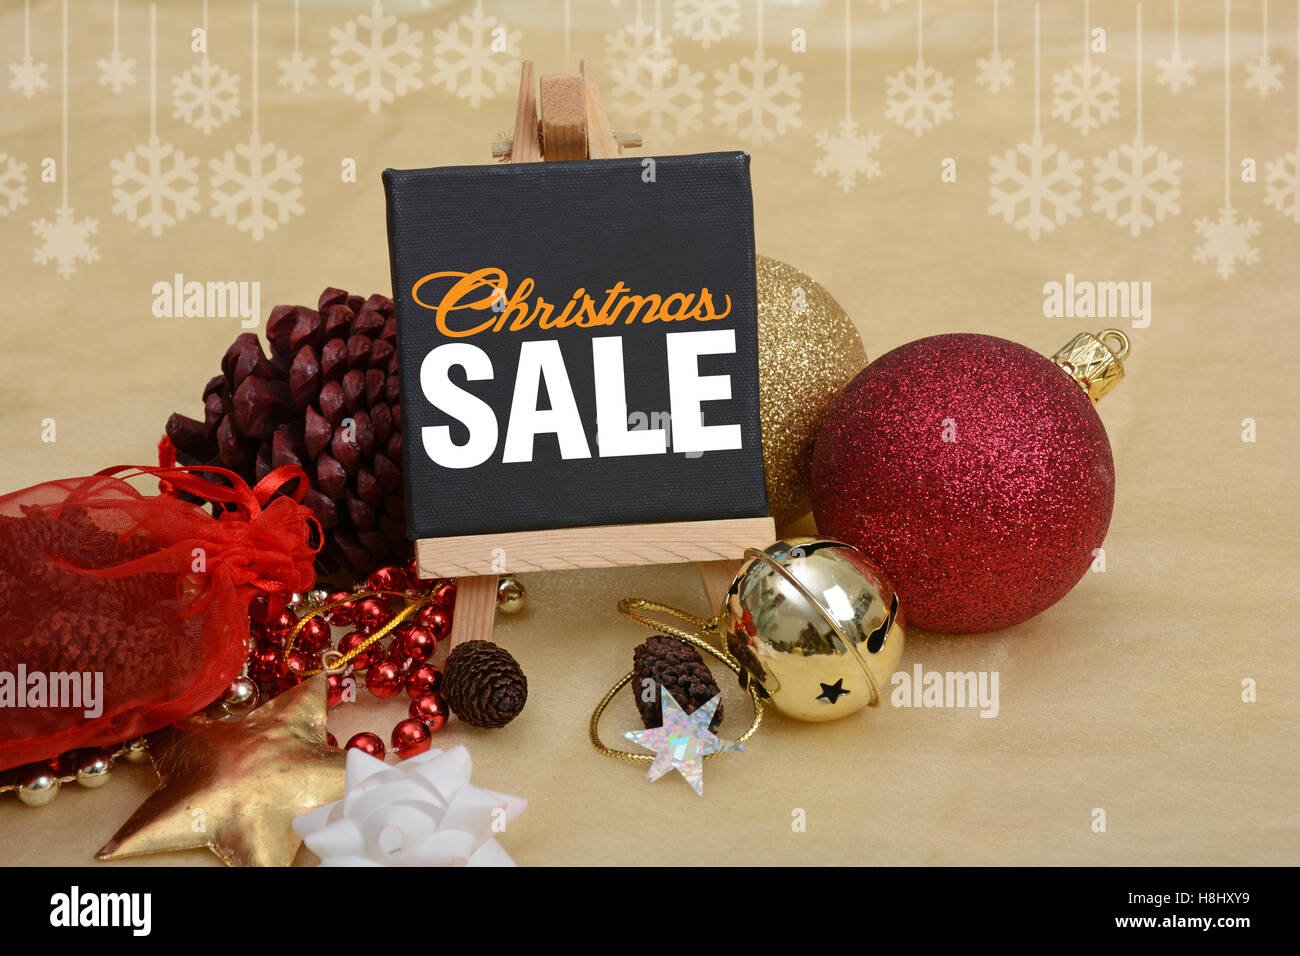 Natale vendita Banner con decorazione di ornamenti, sfere di pino, campane. Foto Stock